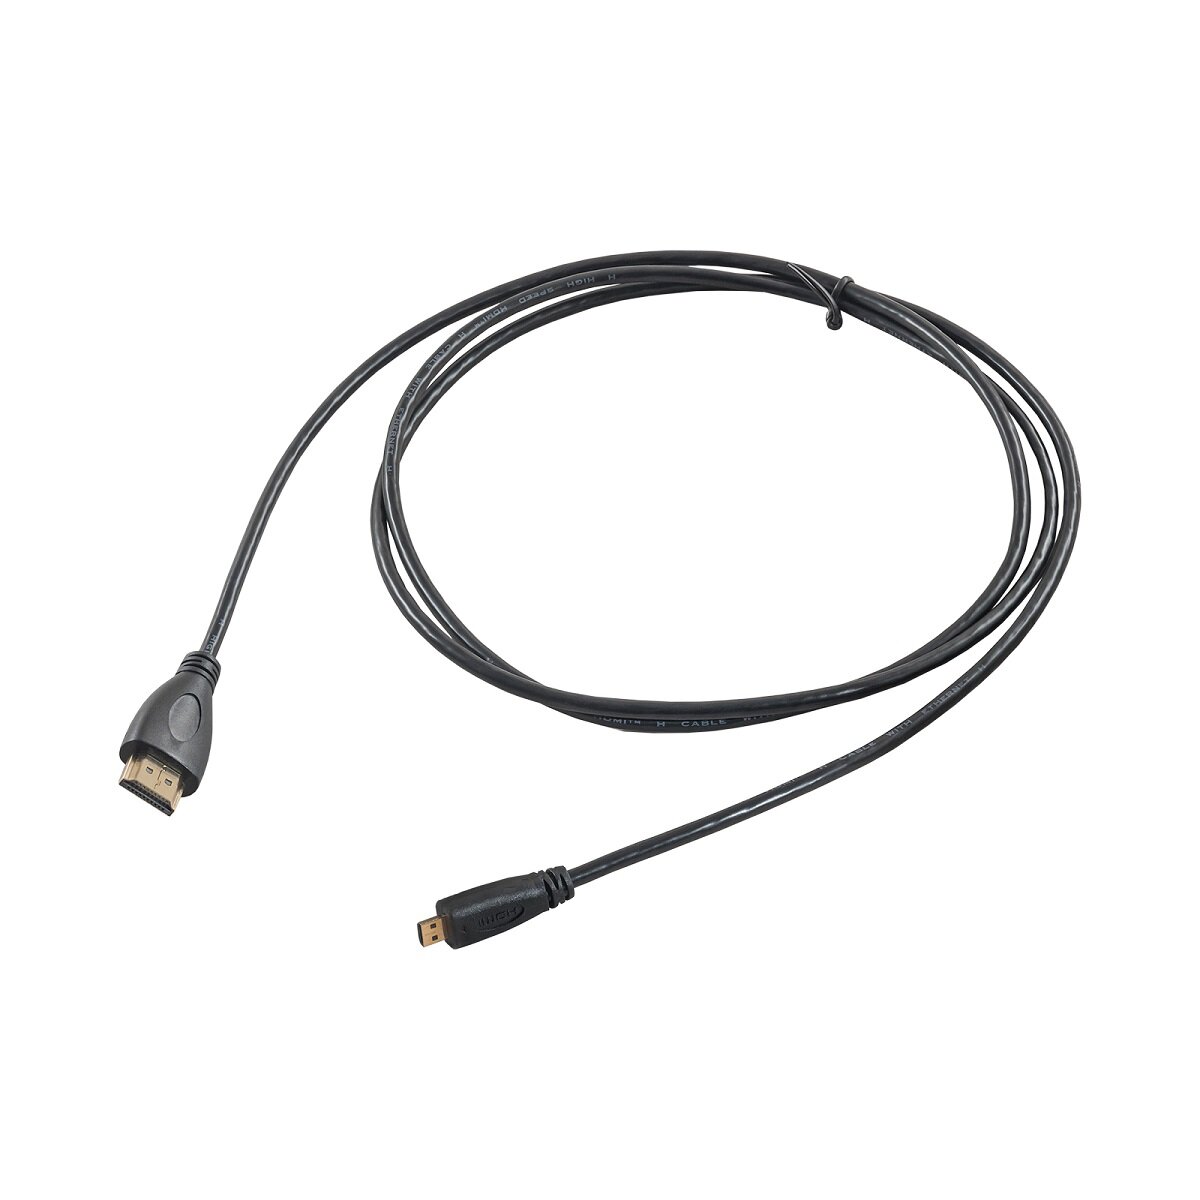 Kabel HDMI / micro HDMI 1.4 Akyga AK-HD-15R widok kabla